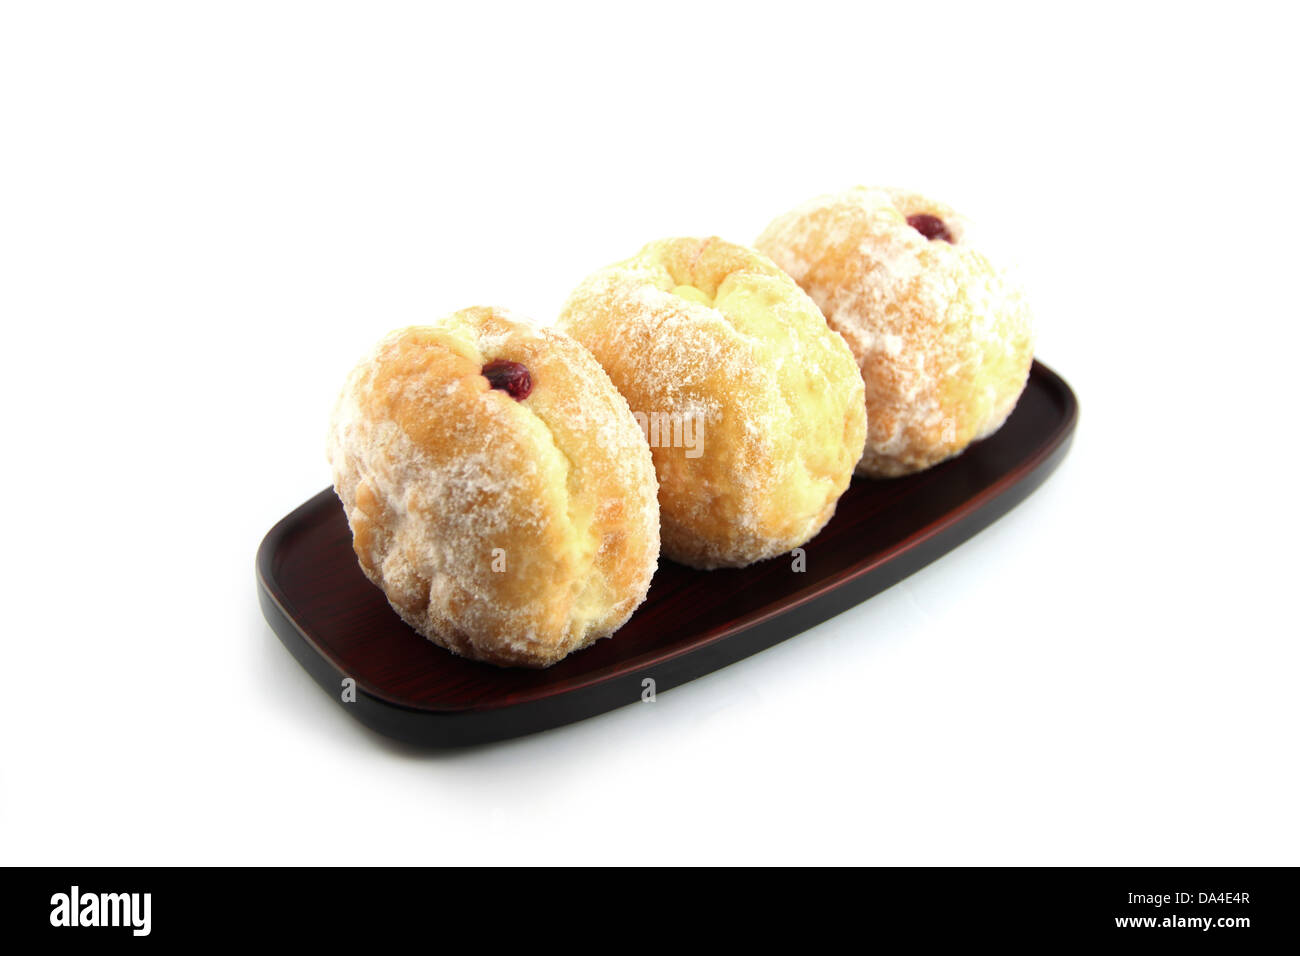 Die drei Blueberry Donuts in Schale auf den weißen Hintergrund. Stockfoto